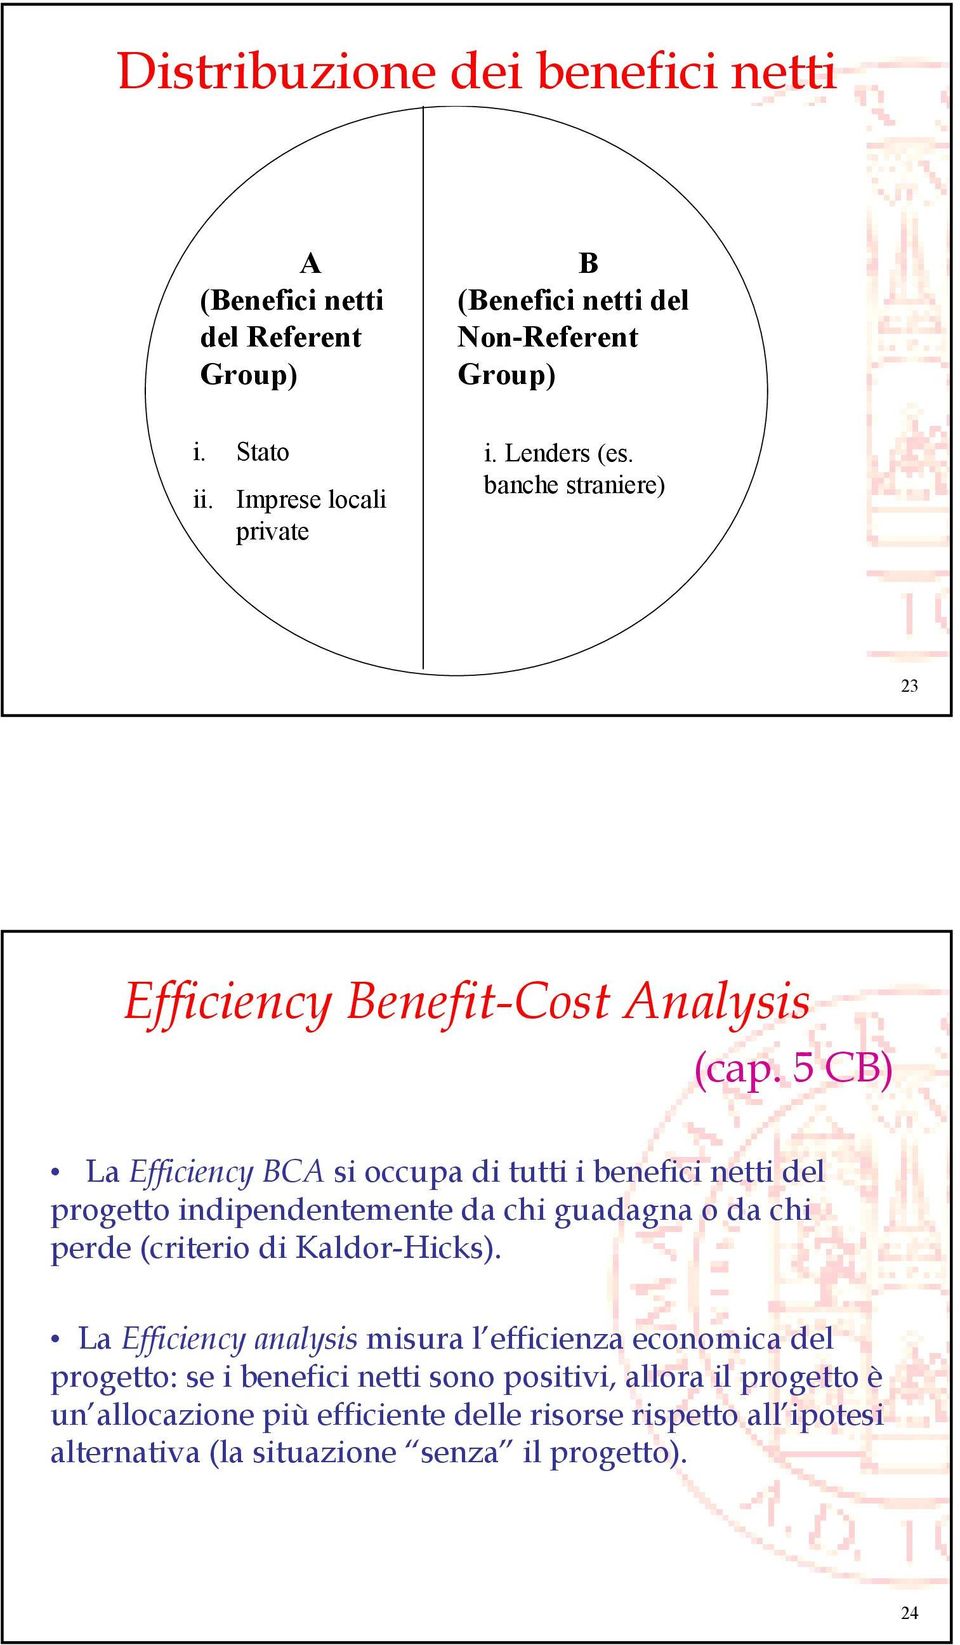 5 CB) La Efficiency BCA si occupa di tutti i benefici netti del progetto indipendentemente da chi guadagna o da chi perde (criterio di Kaldor-Hicks).